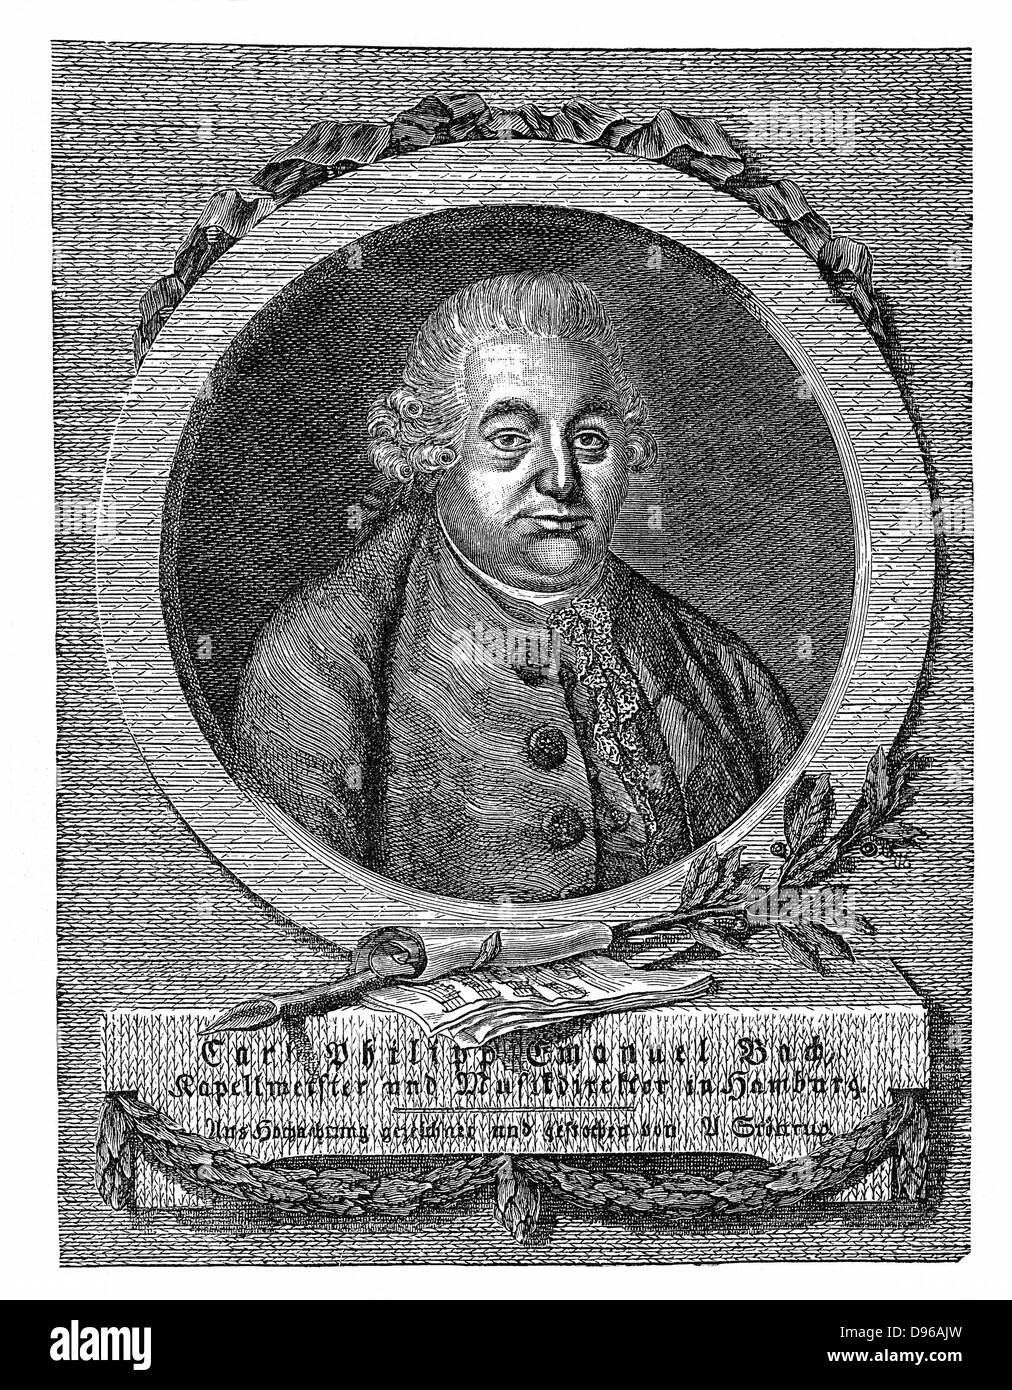 Carl Philip Emmanuel Bach (1714-88) deuxième fils de Johann Sebastian Bach, Kapellmeister à Hambourg à partir de 1767. A introduit la forme sonate. Était gaucher. La gravure. Banque D'Images